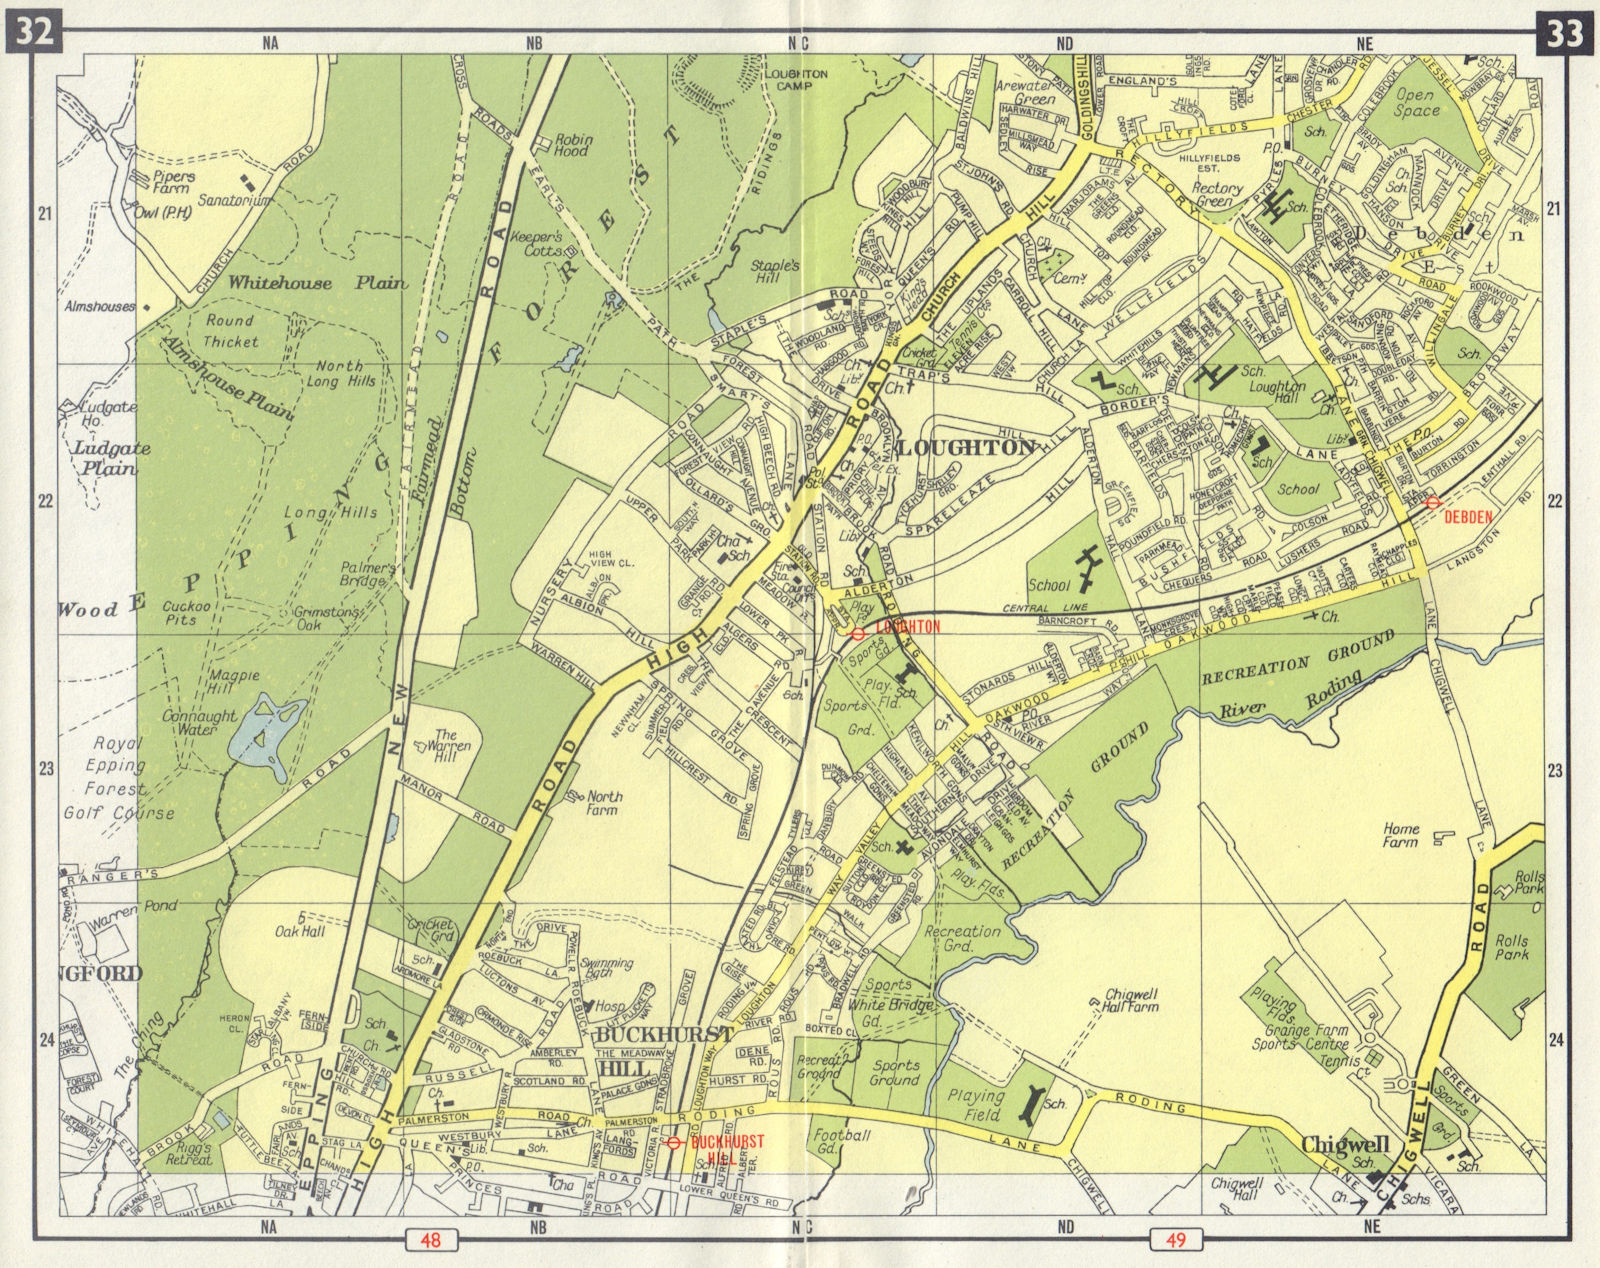 NE LONDON Loughton Epping Forest Buckhurst Hill Debden Chigwell 1965 old map